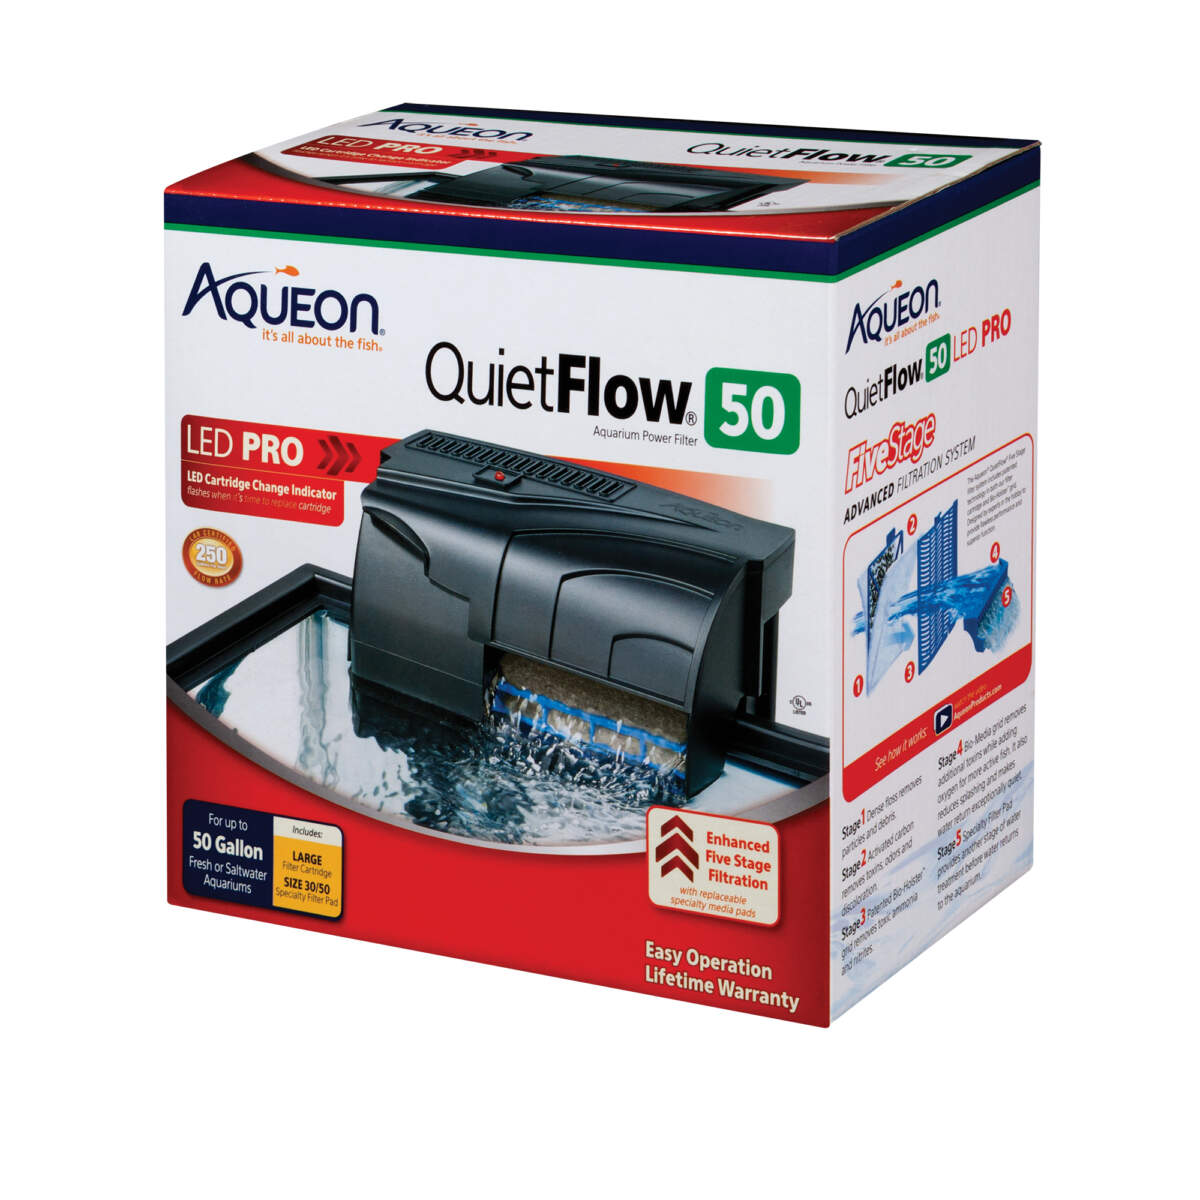 Aqueon QuietFlow 50 LED PRO Aquarium Power Filter